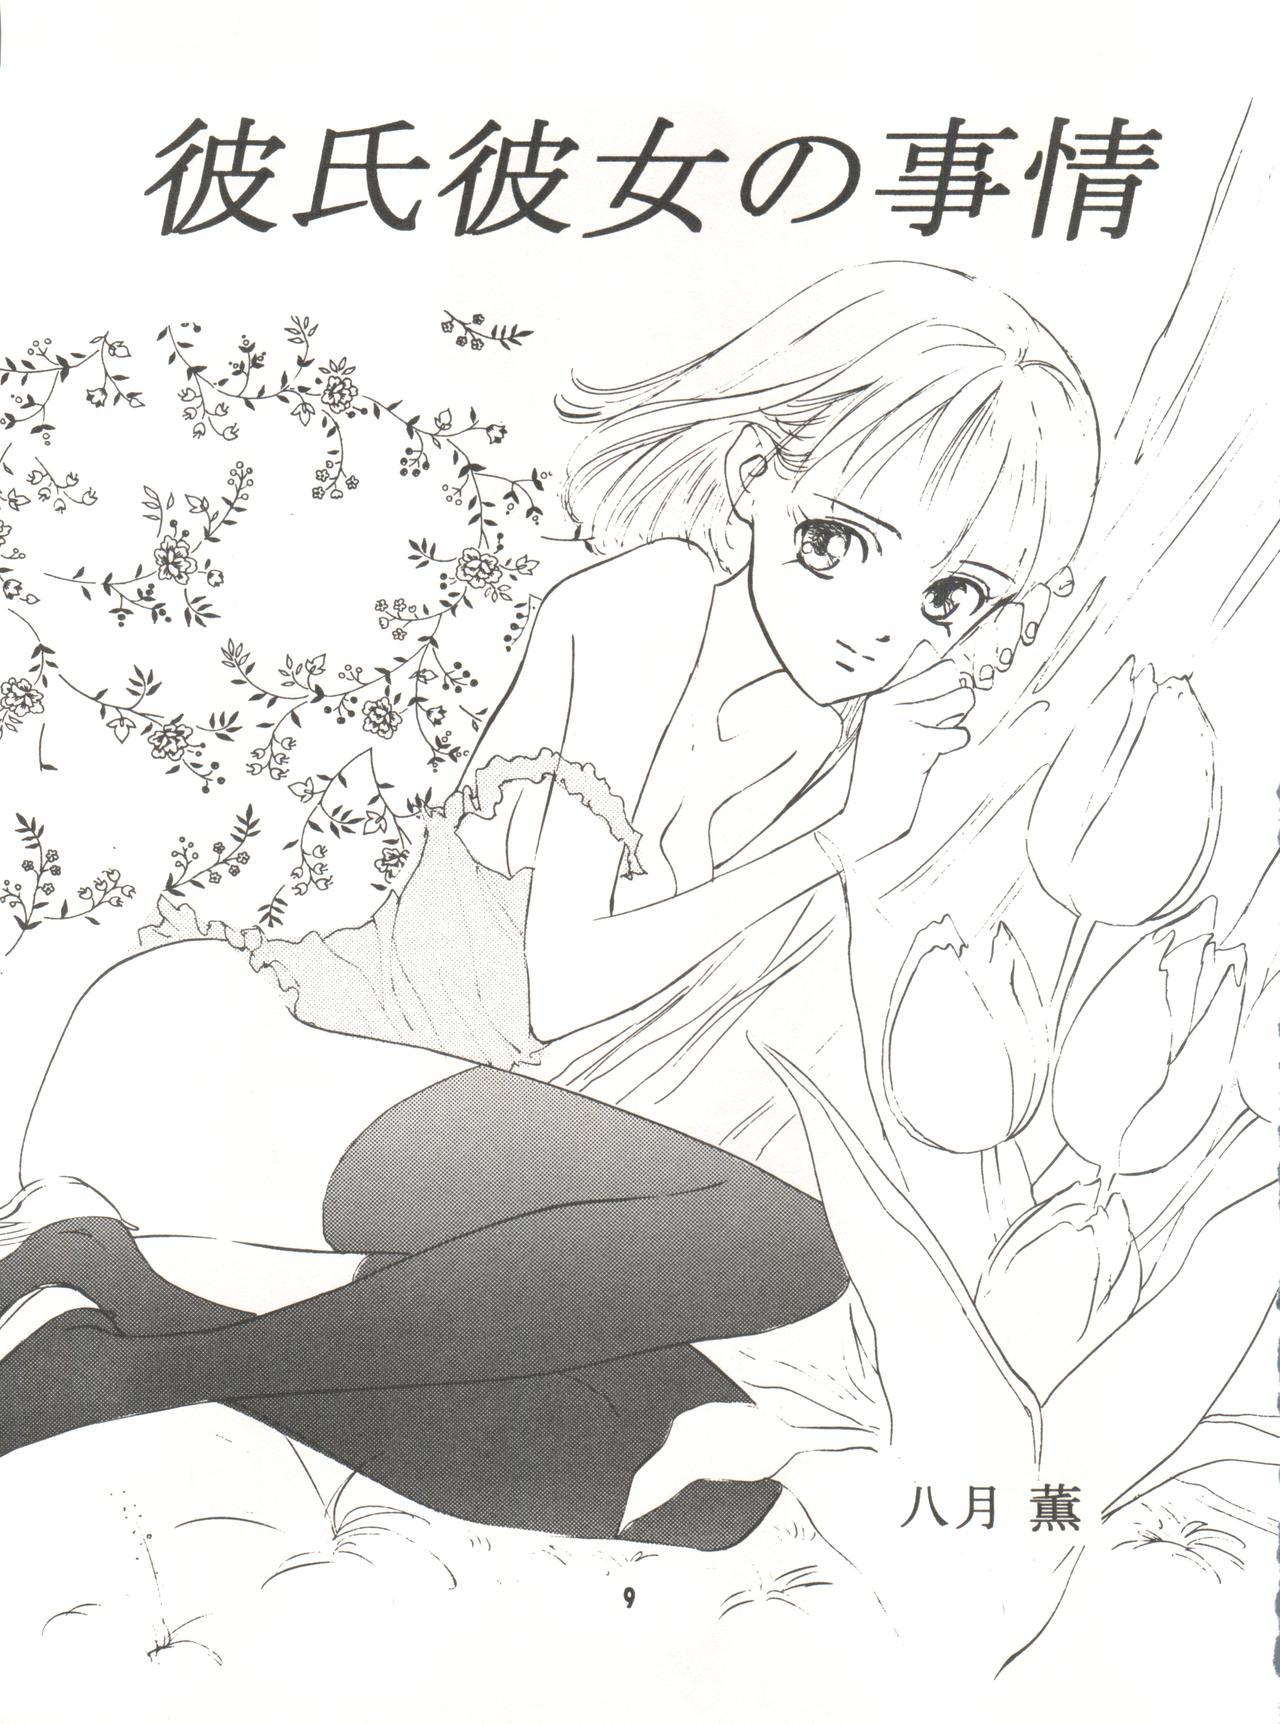 Kashima Wanpaku Anime Vol. 9 Kare Kano Tokushuu Kanojo wa... - Kare kano Doggystyle - Page 11